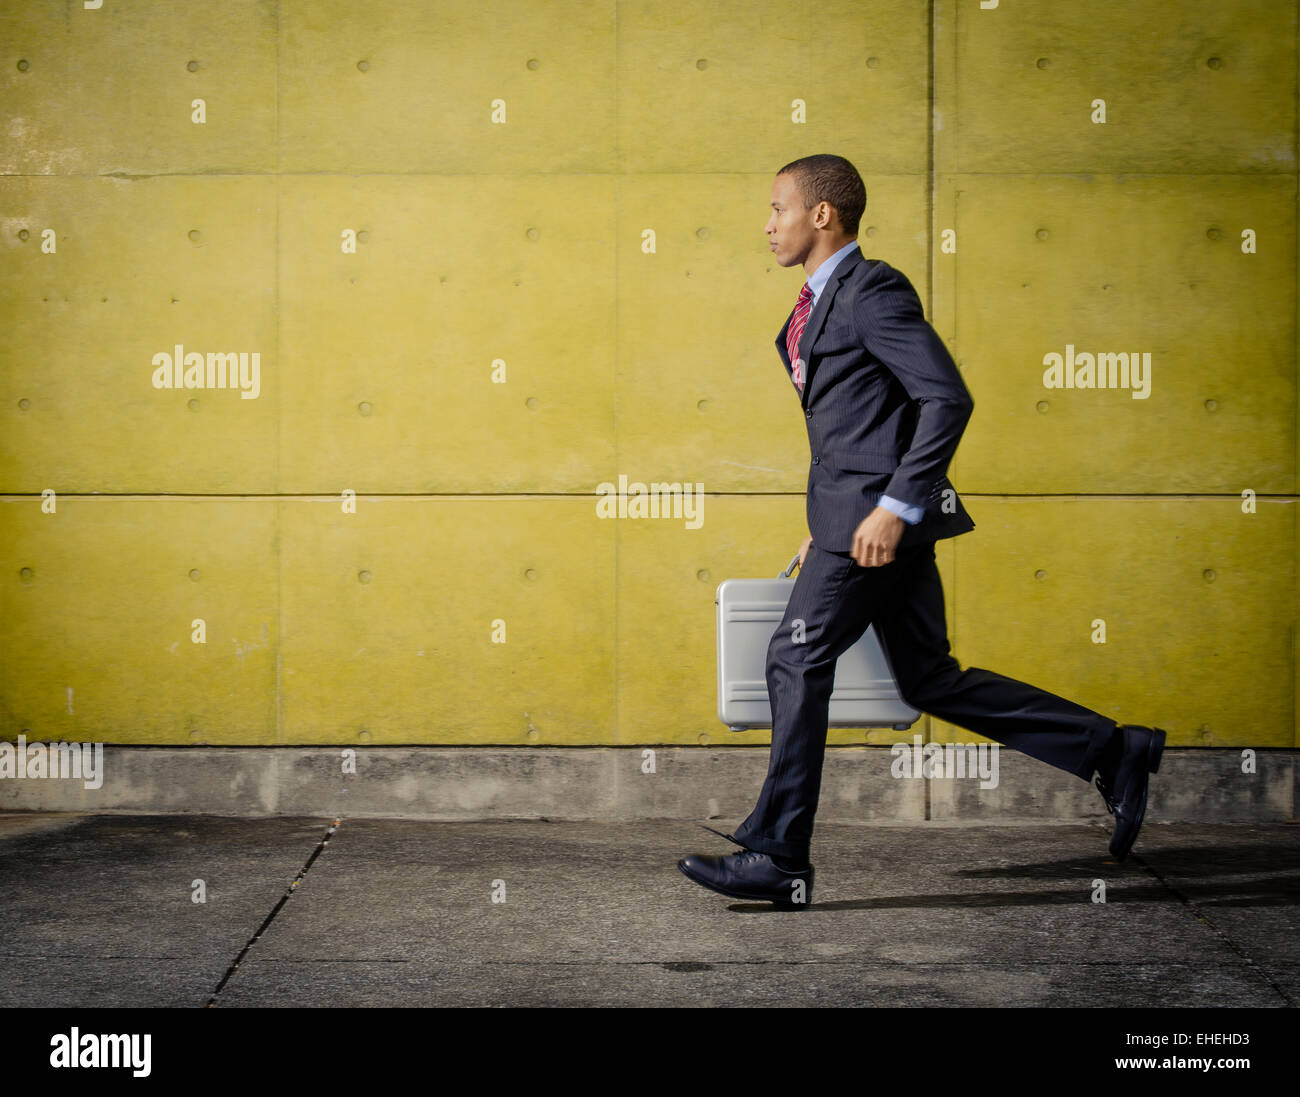 Businessman portrait wearing suit and tie running with Halliburton Zero Aluminum Aluminium briefcase / attache case Stock Photo